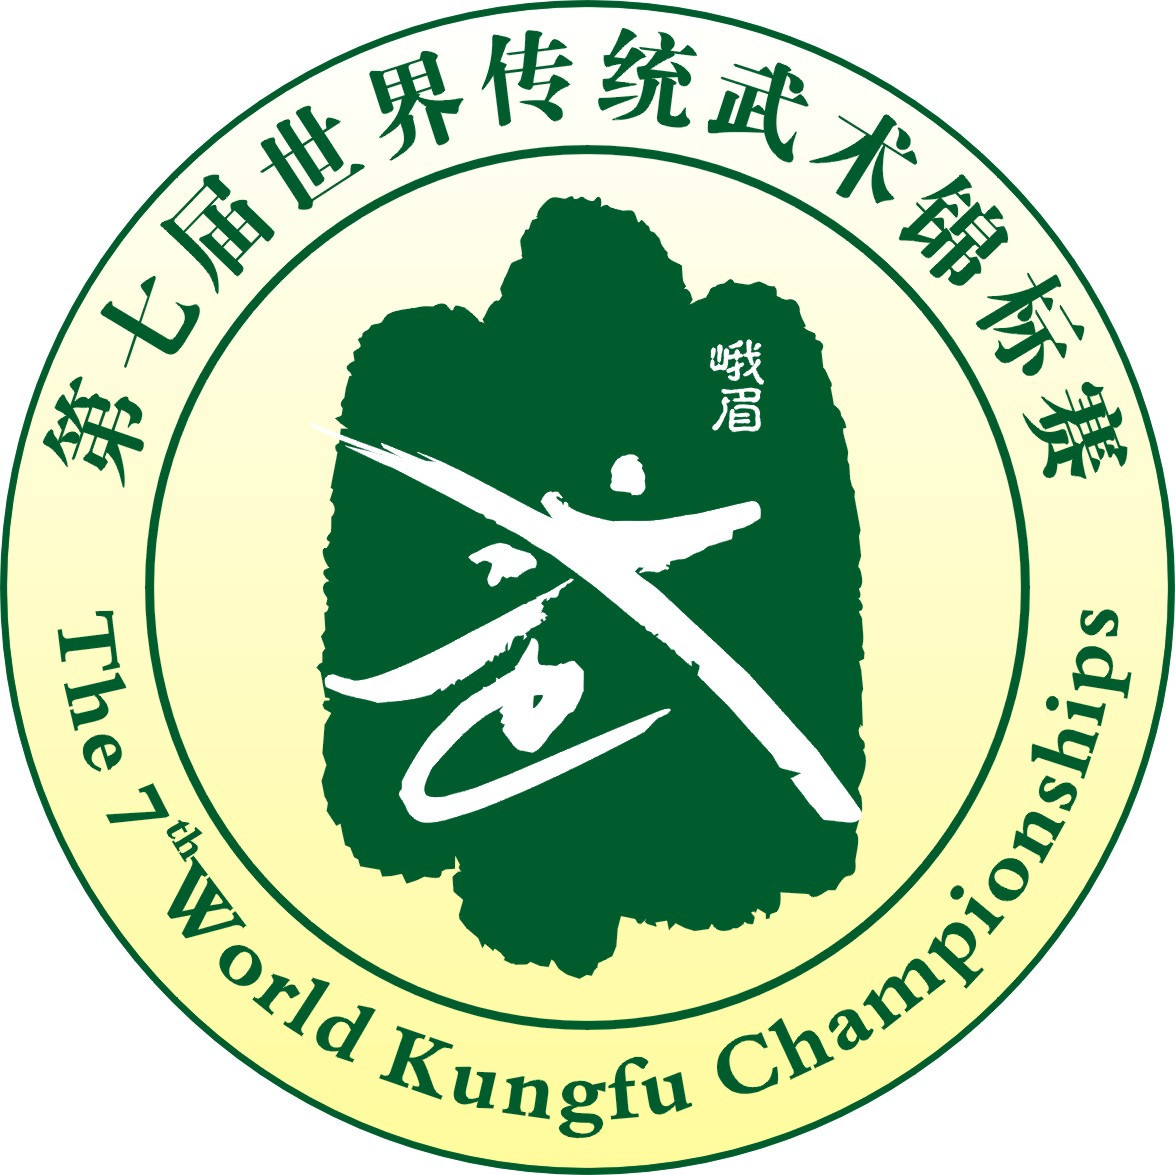 March 2018 – Kung Fu Wushu SA